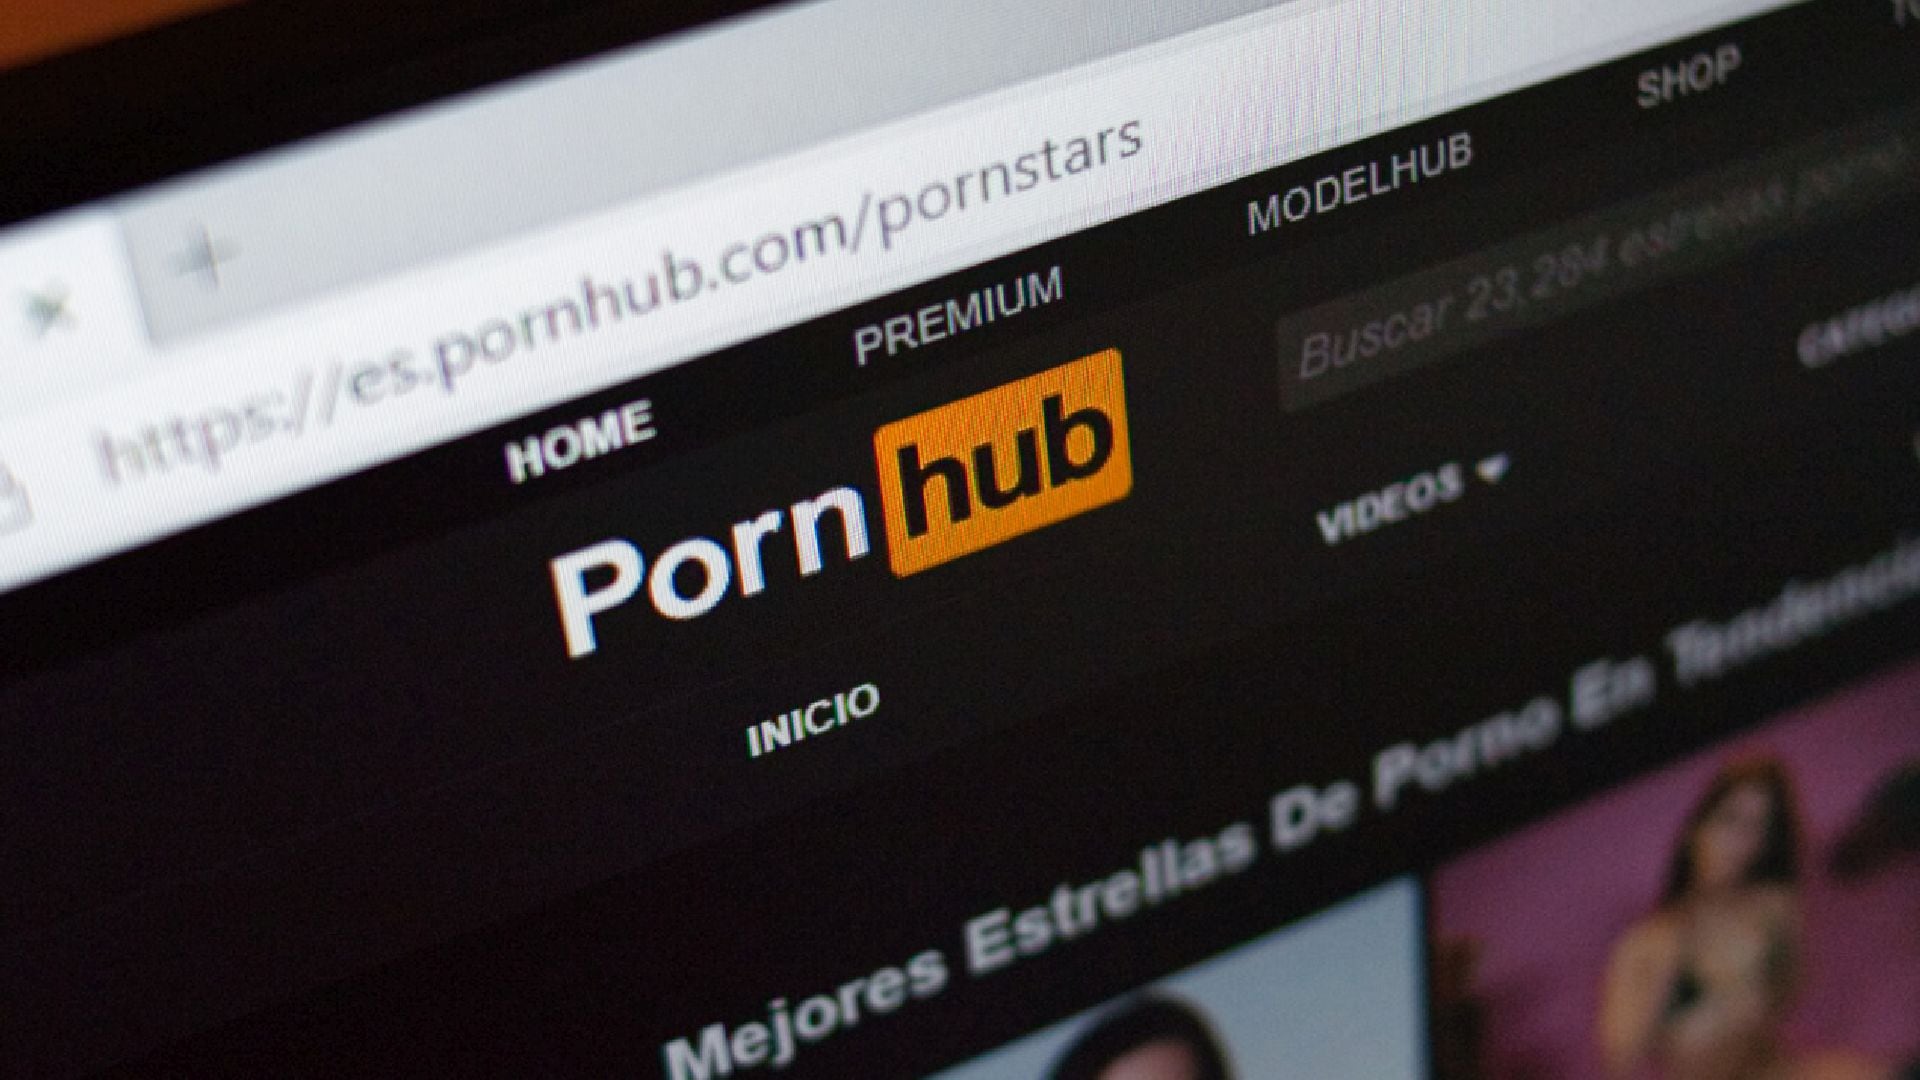 Aylo, antes MindGeek, propietario de Pornhub y otros sitios, implementa medidas restrictivas en varios estados (Pornhub.com)